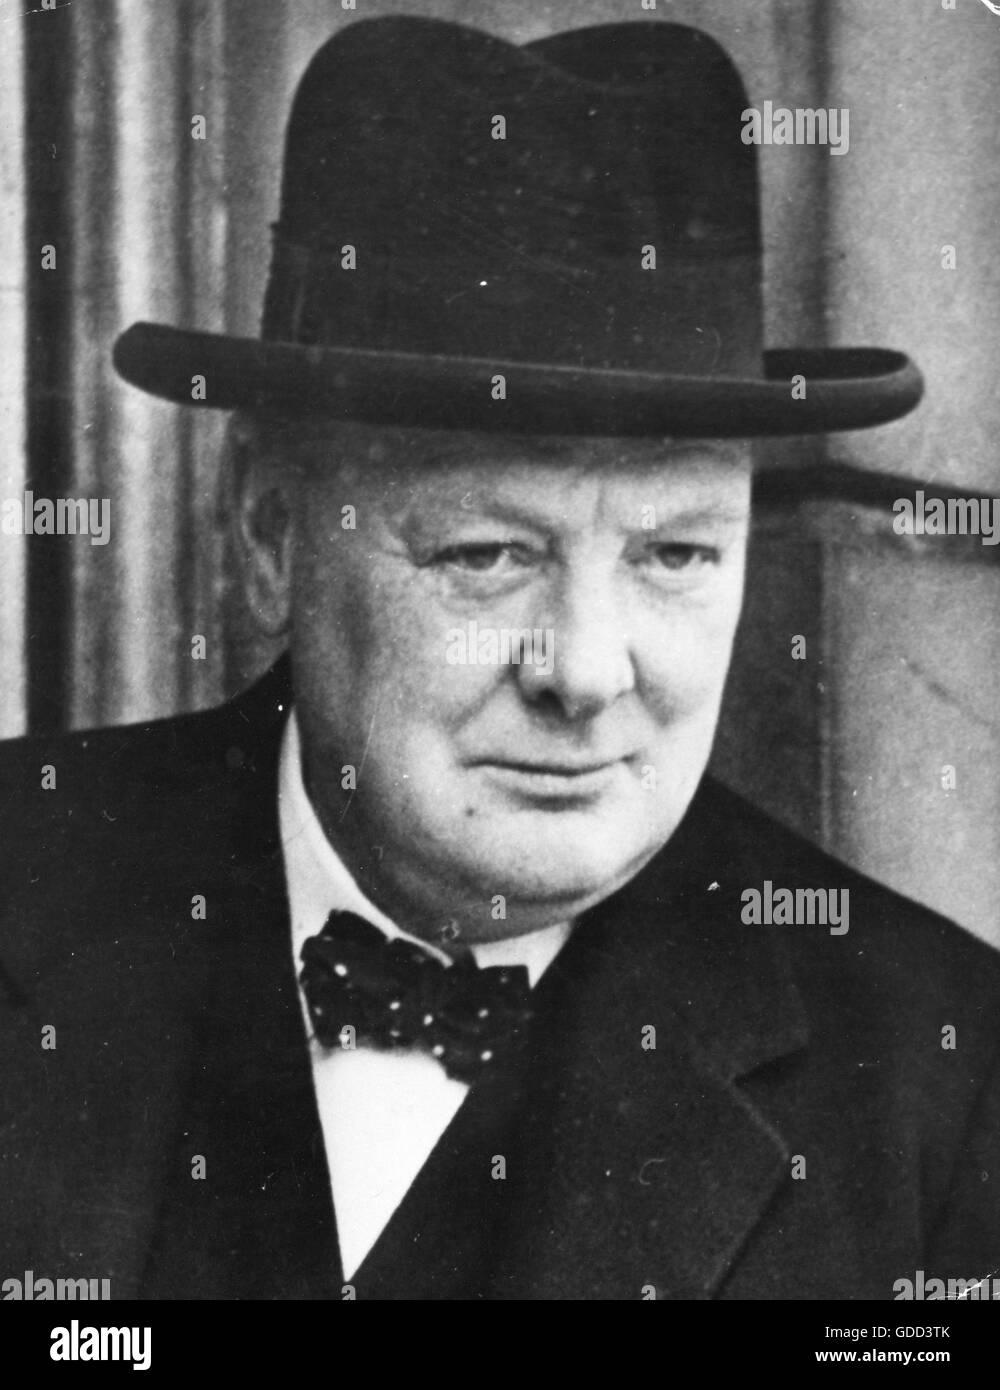 Churchill, Winston, 30.11.1874 - 24.1.1965, British politician (Cons.), Prime Minister 10.5.1940 - 26.7.1945, portrait, 1940, Stock Photo